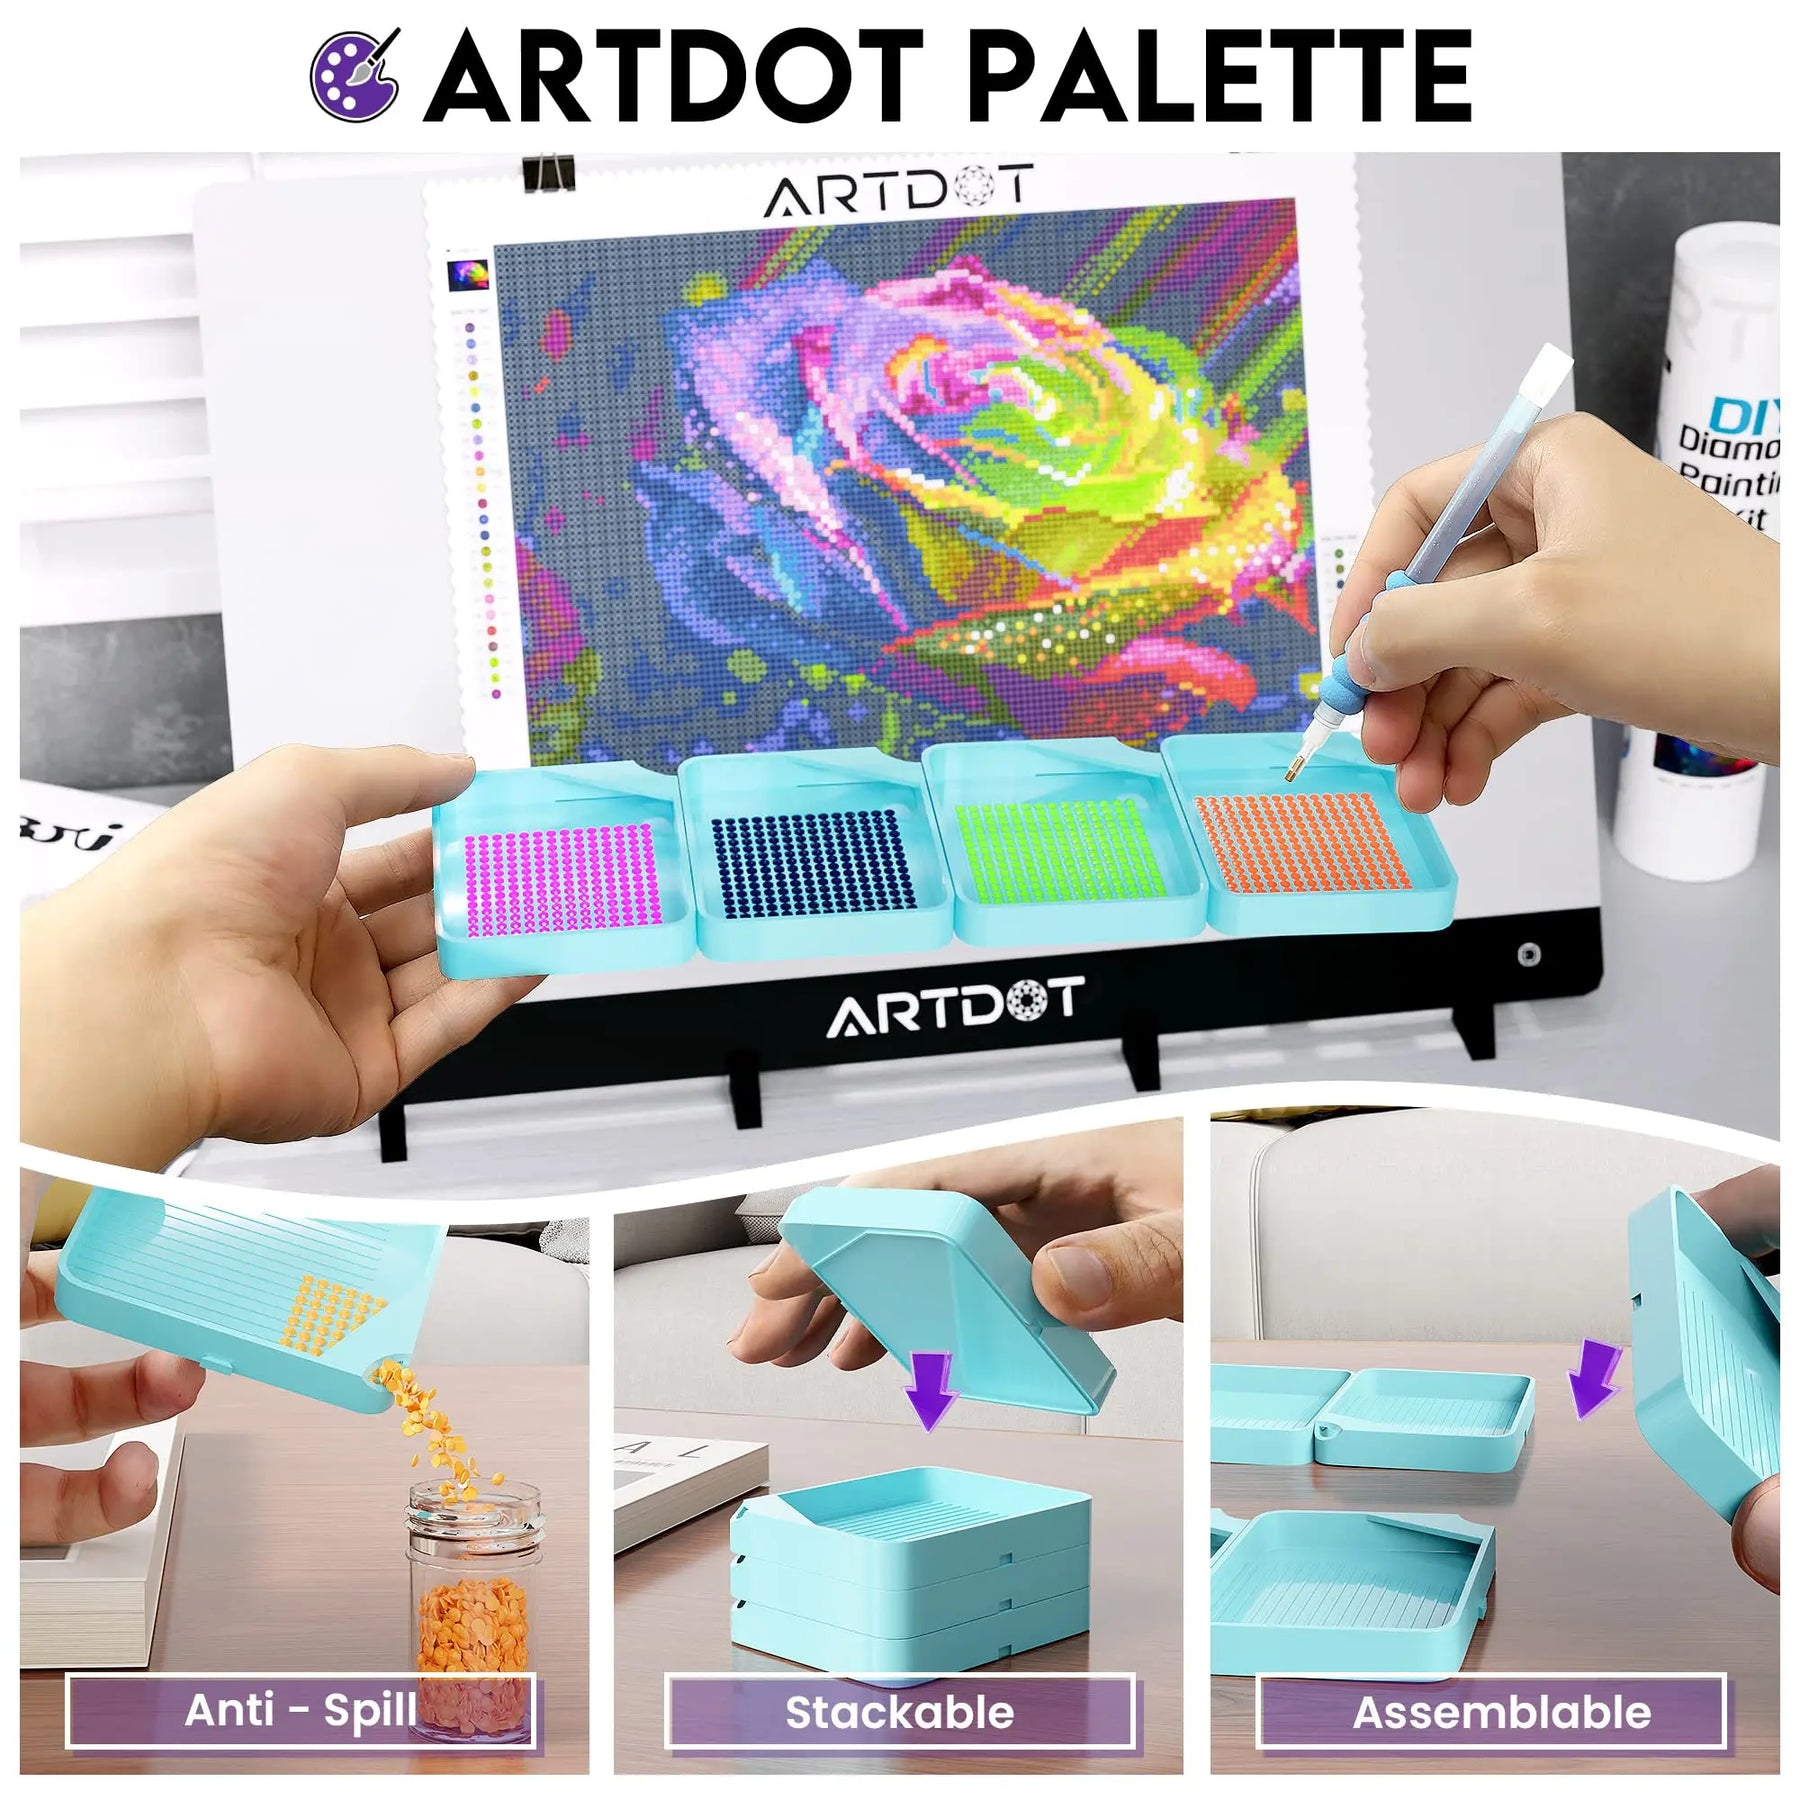 Rose Diamond Painting Kits - ARTDOT